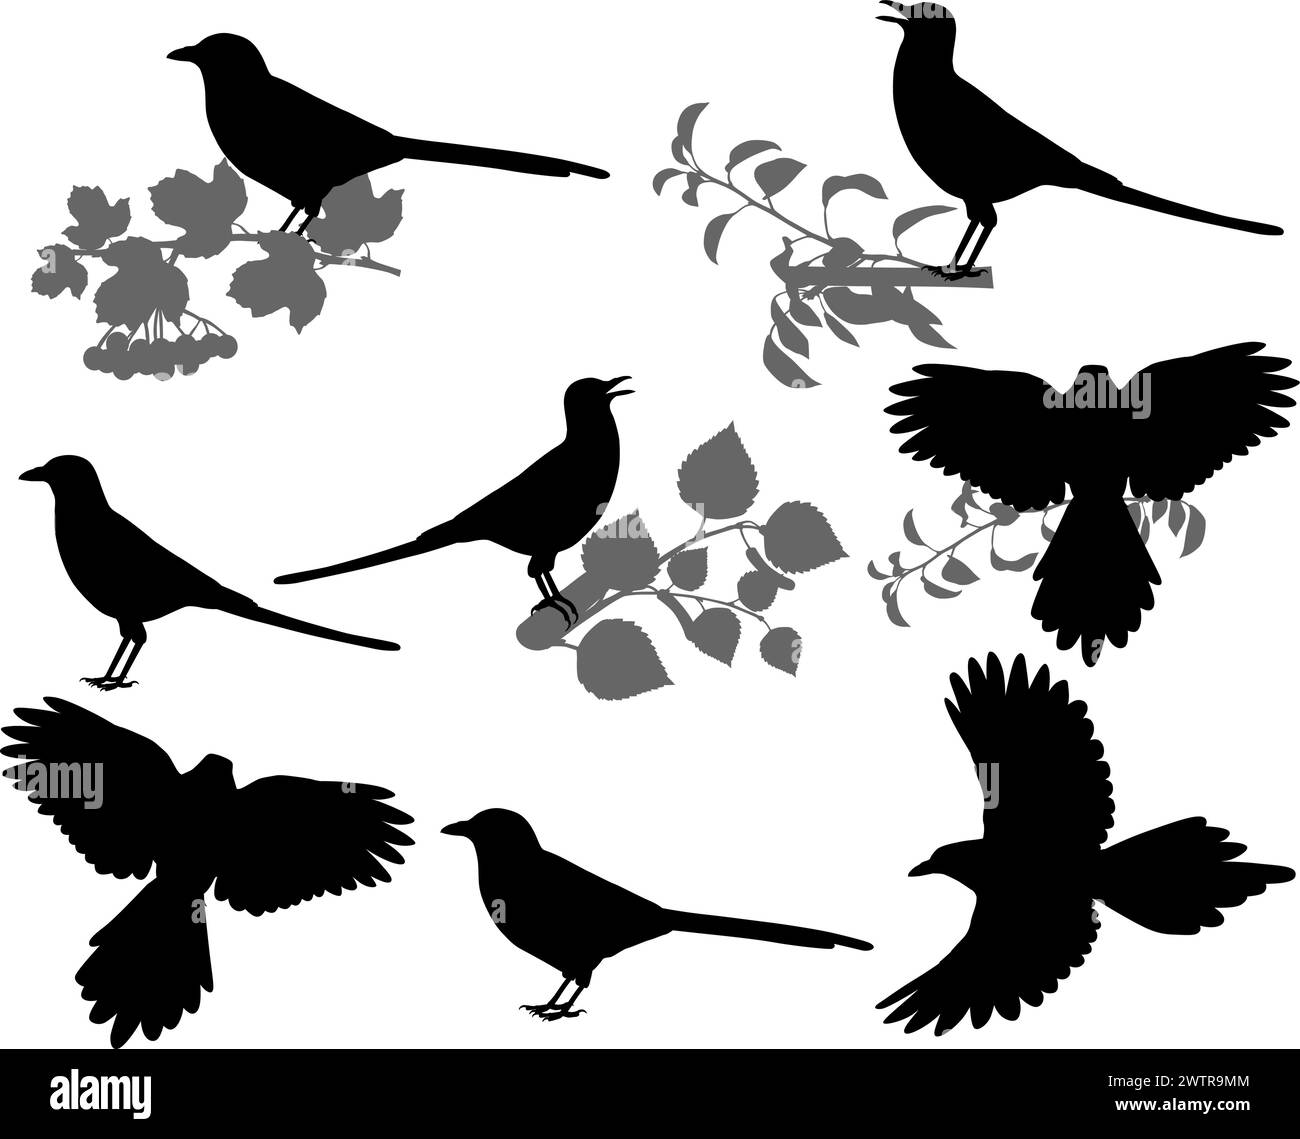 Collezione di silhouette di magpies a becco giallo e nero Illustrazione Vettoriale